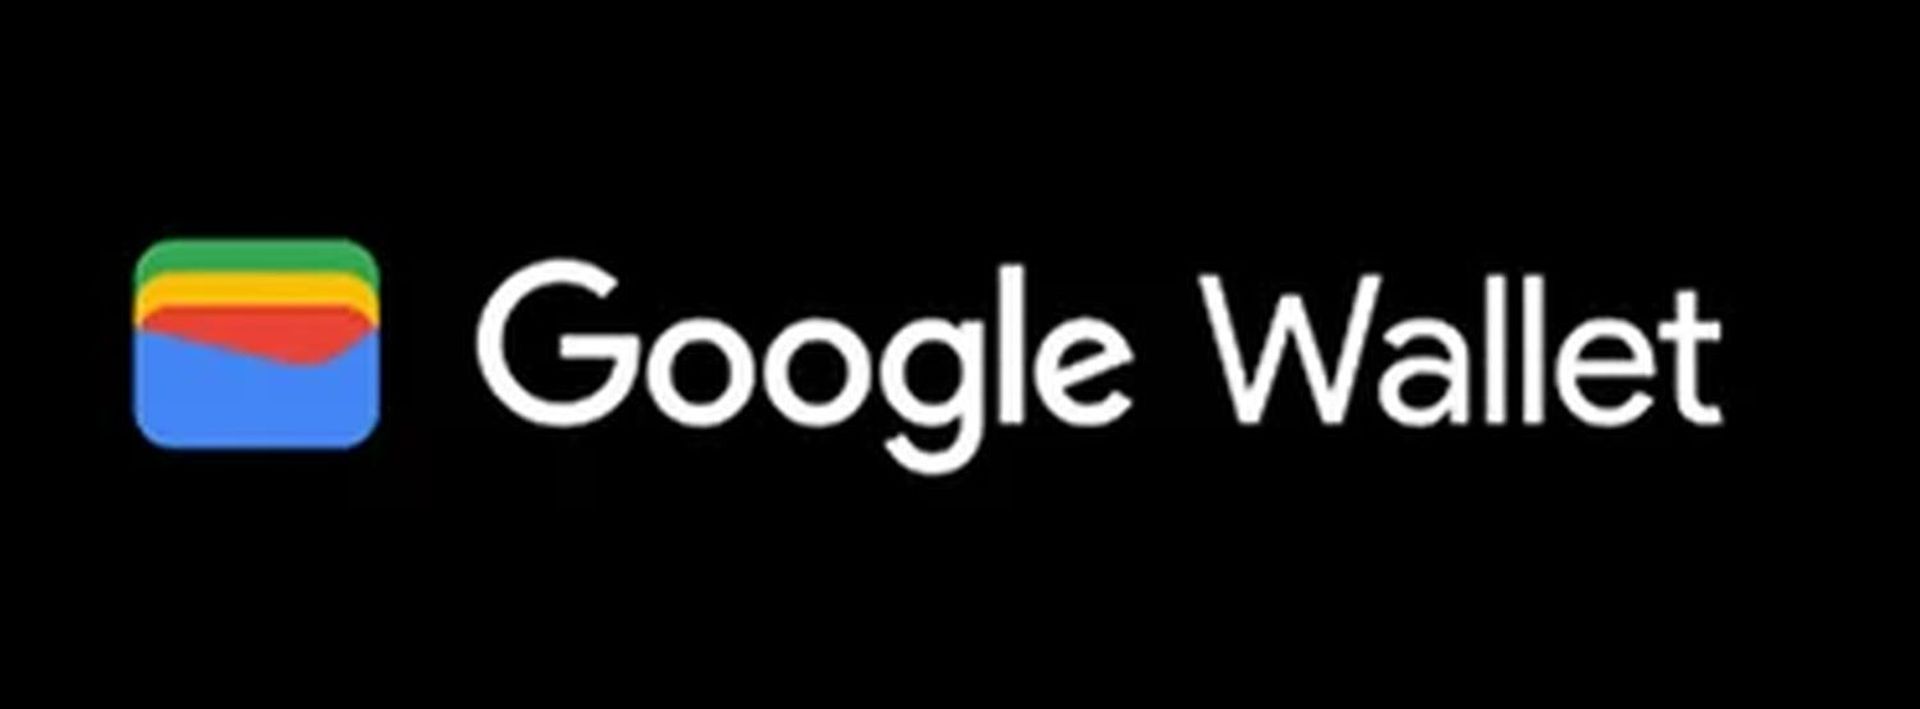 Tìm hiểu lý do Google Wallet không hoạt động với hướng dẫn toàn diện của chúng tôi! Ngoài ra, còn có các lựa chọn thay thế Google Wallet đáng để thử. Khám phá ngay bây giờ!